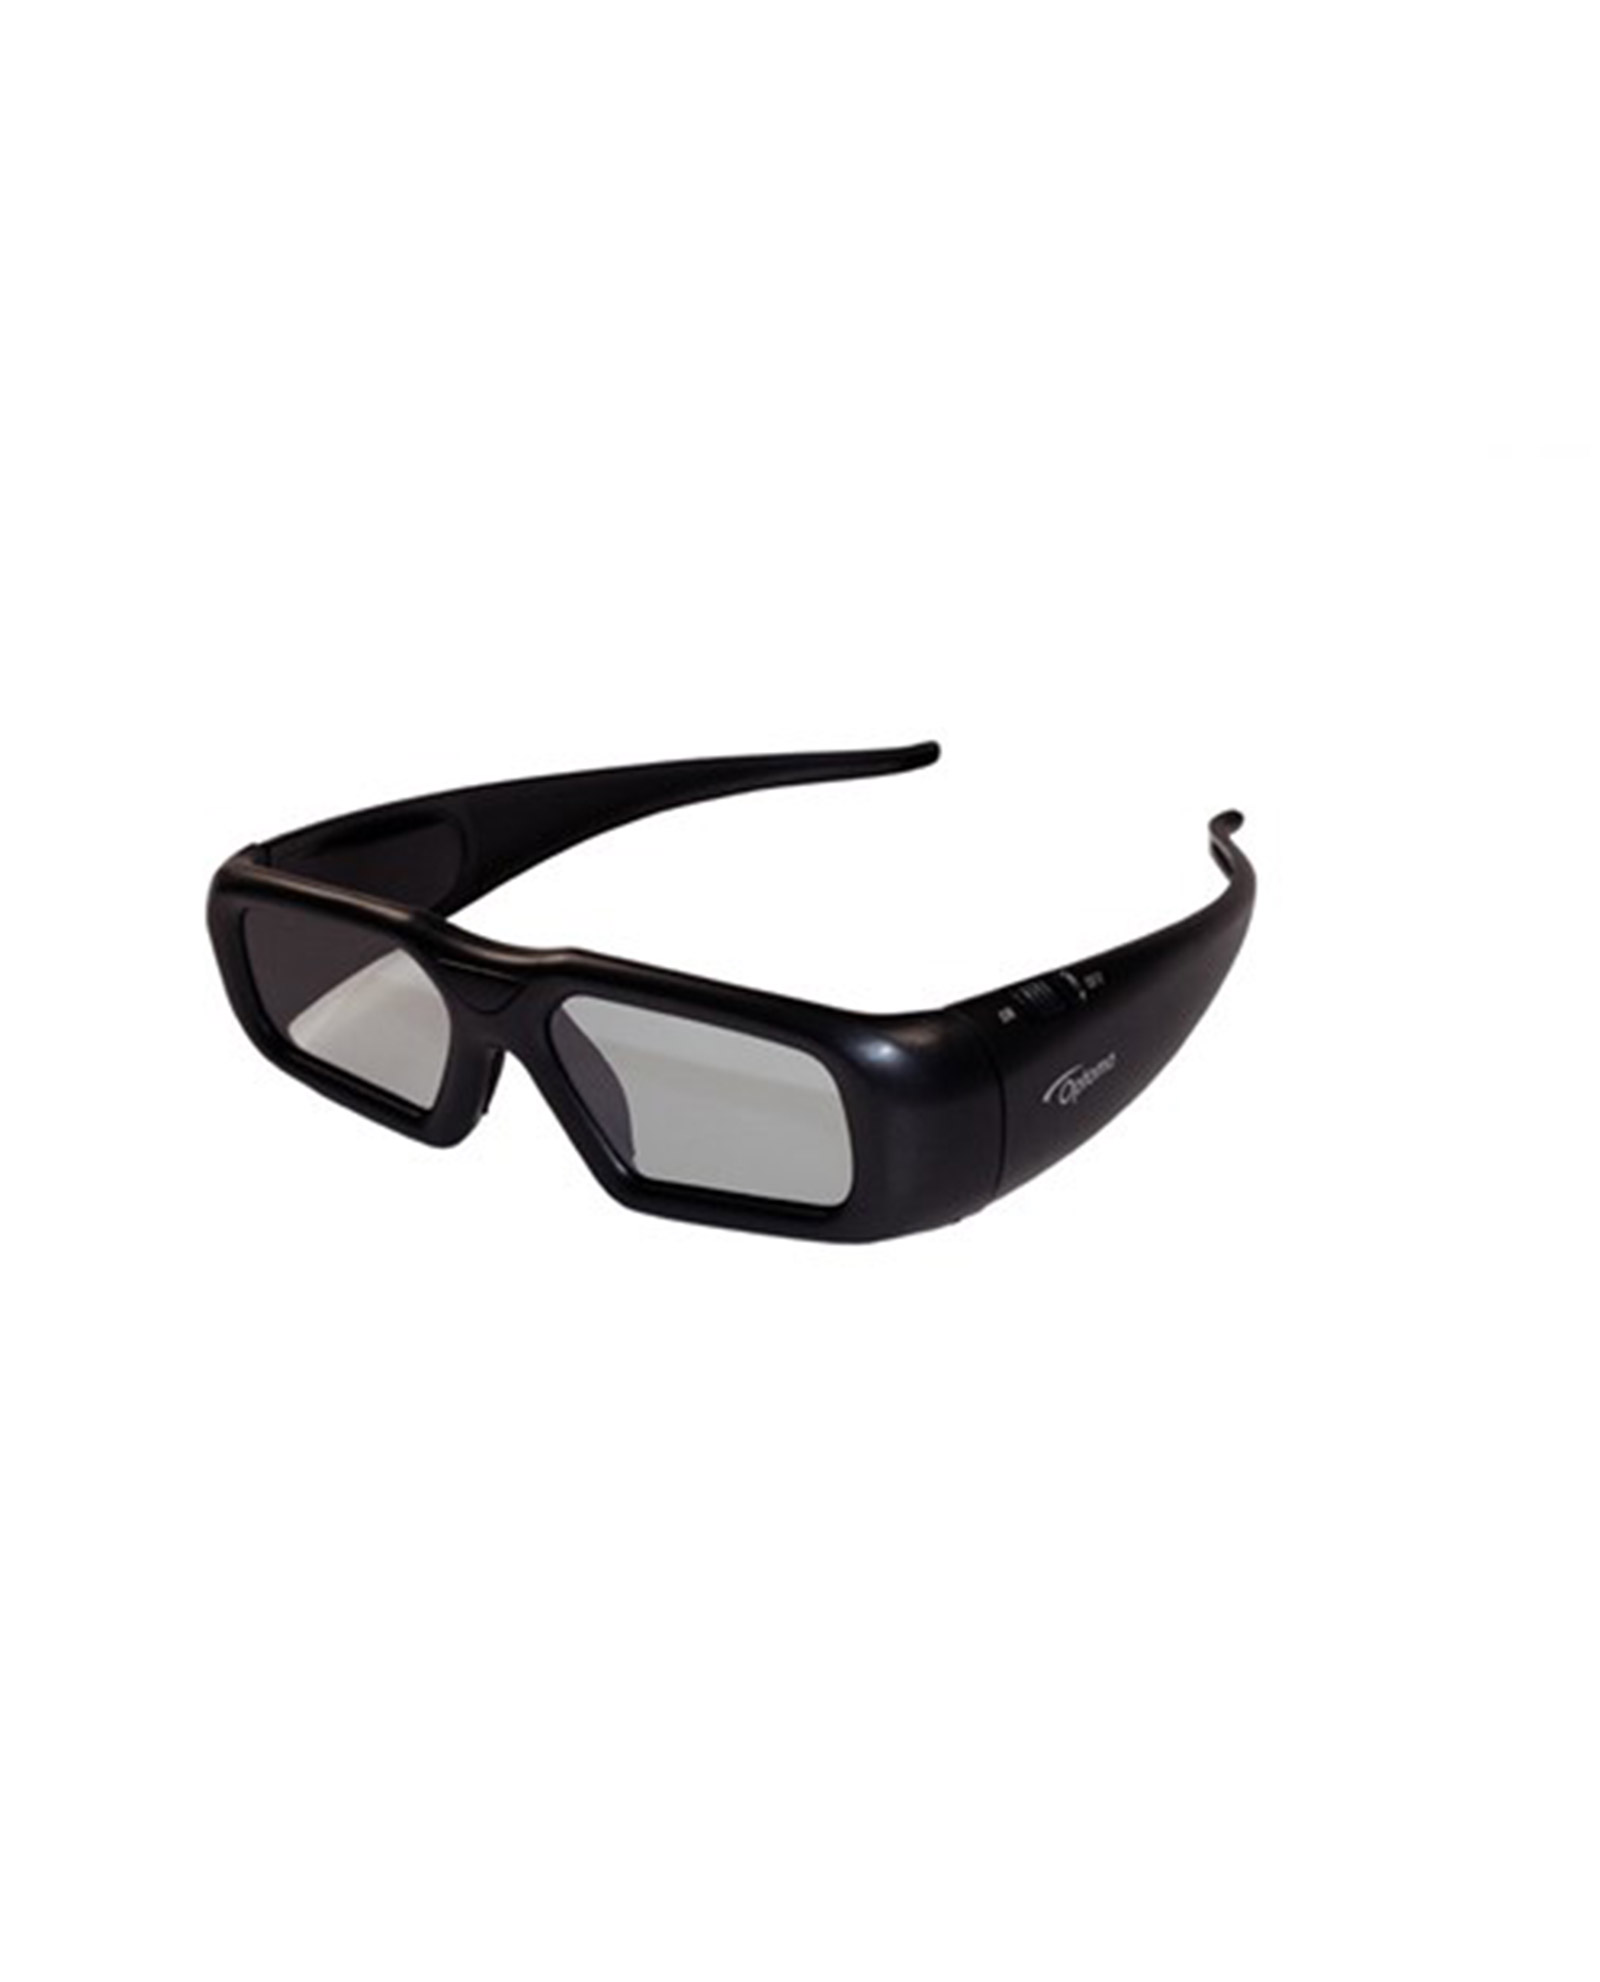 Optoma Zf2300 Glasses 1 1